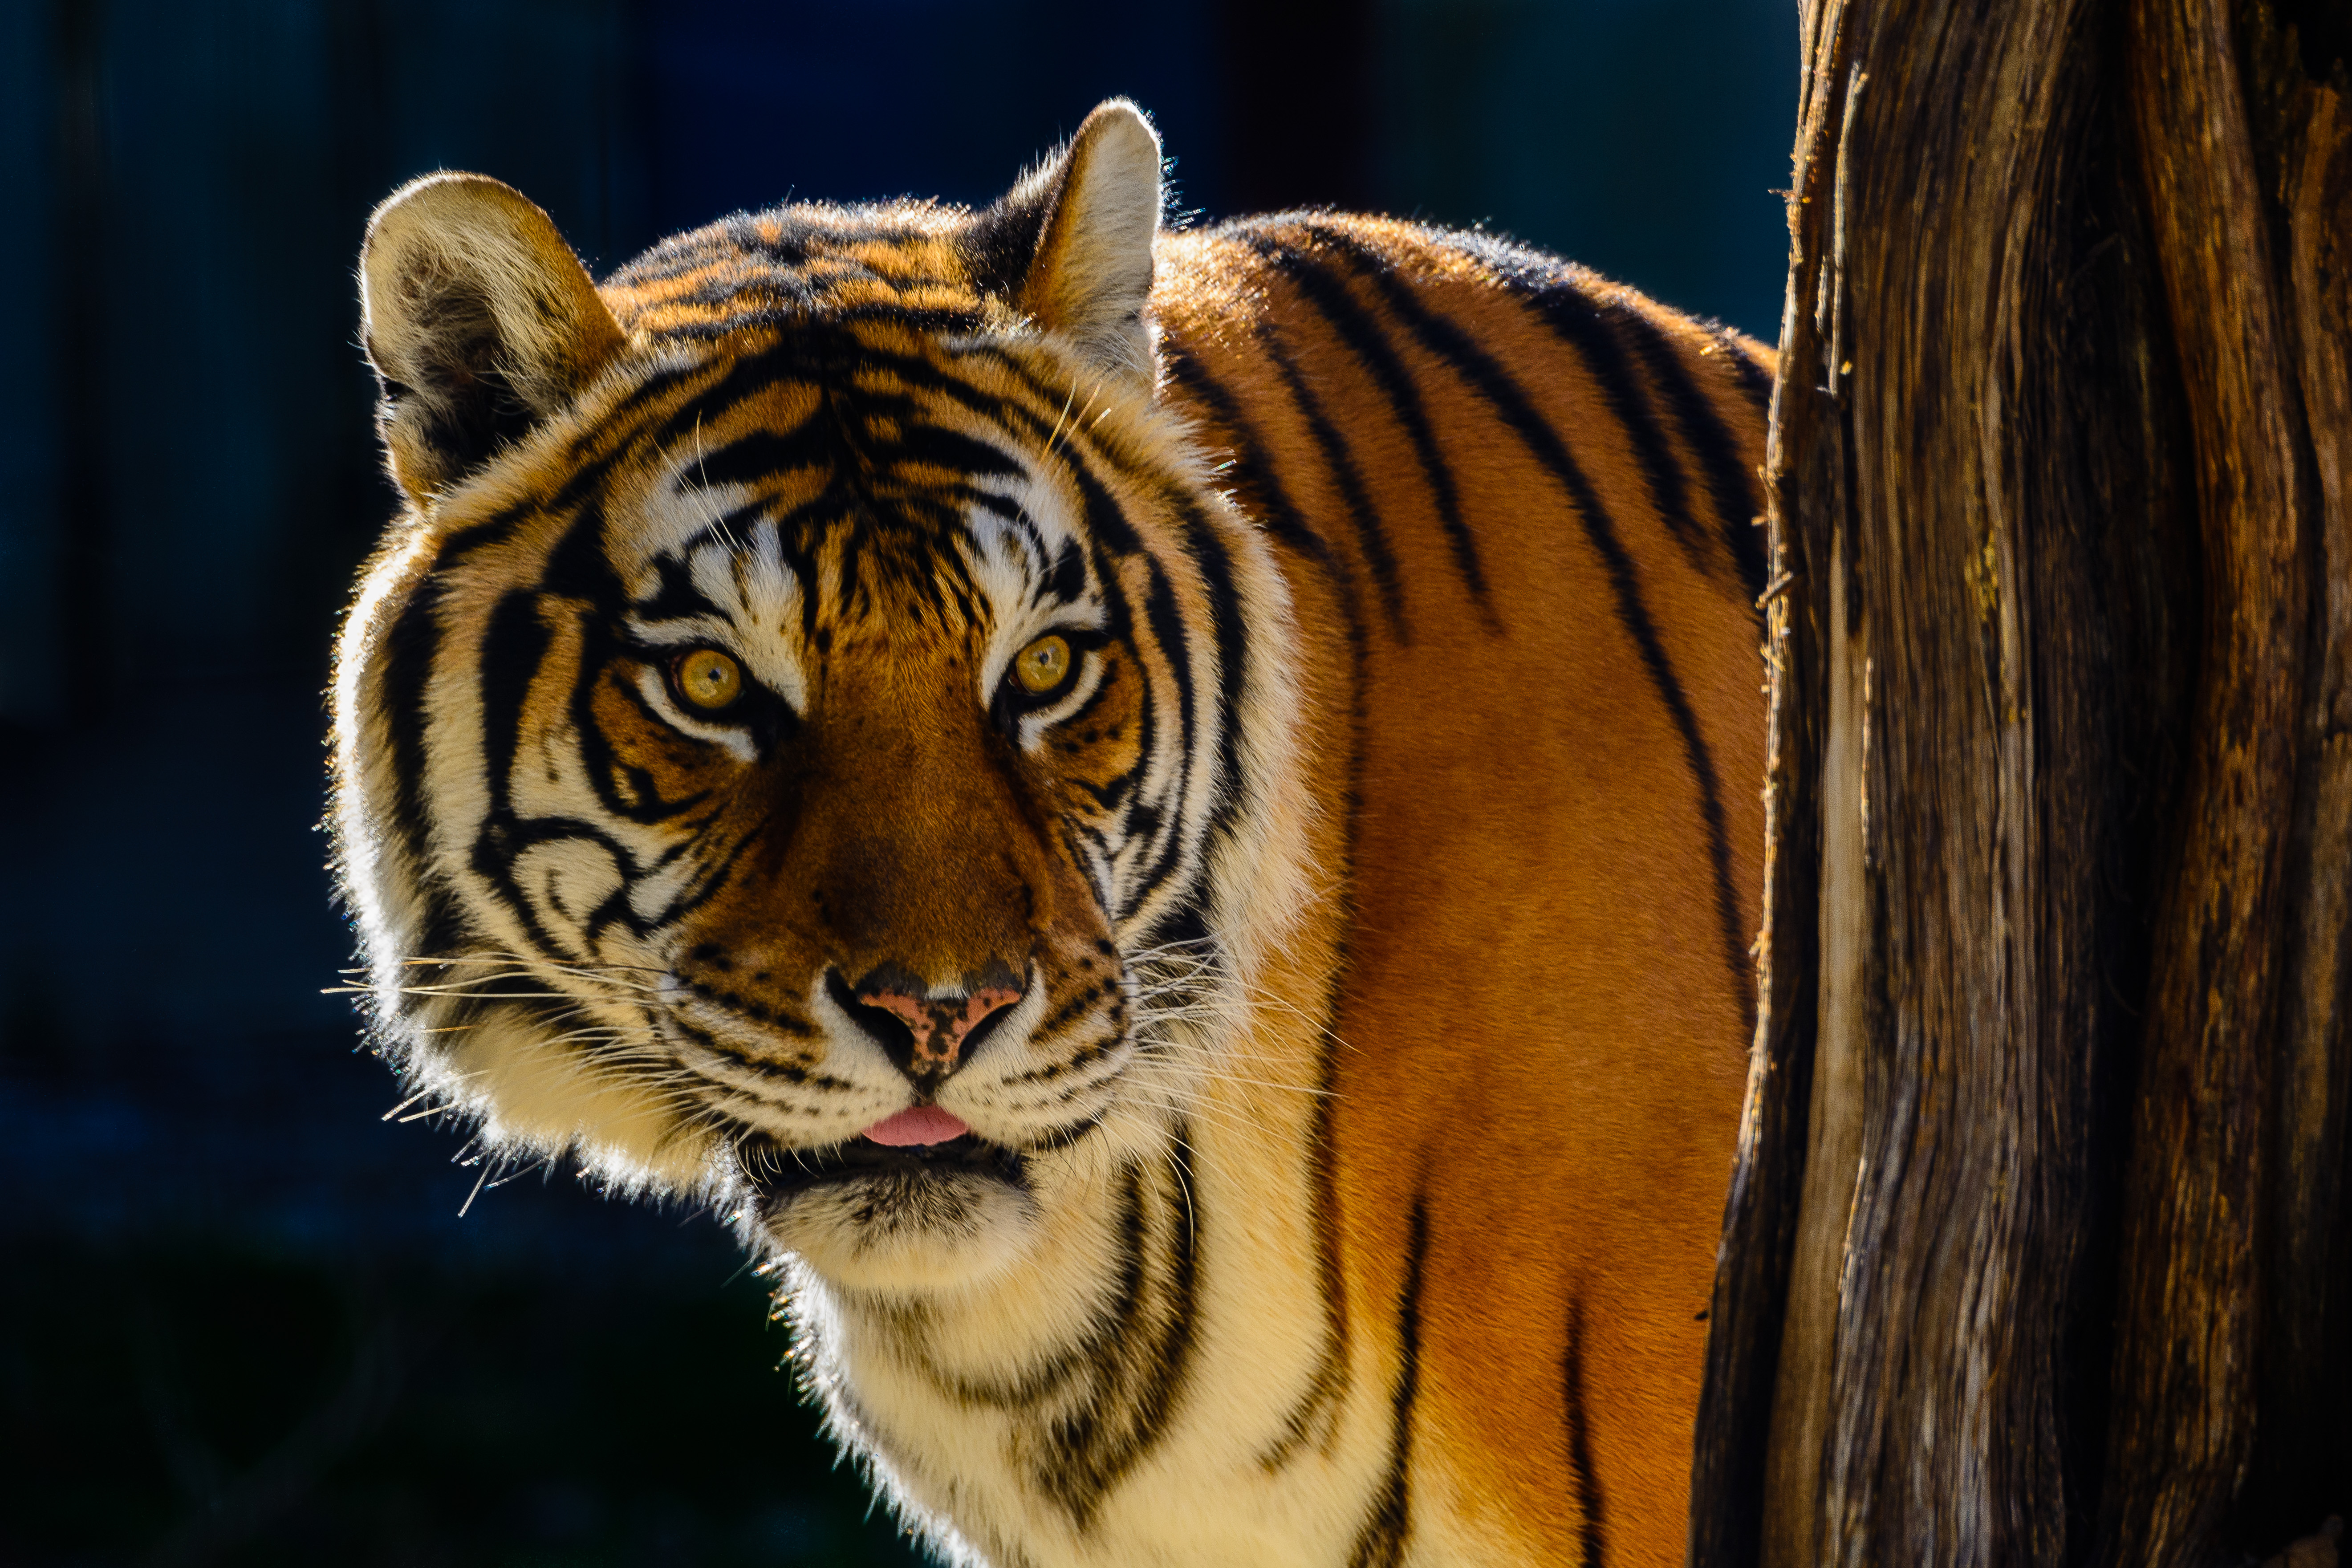 Bengal tiger portrait photo